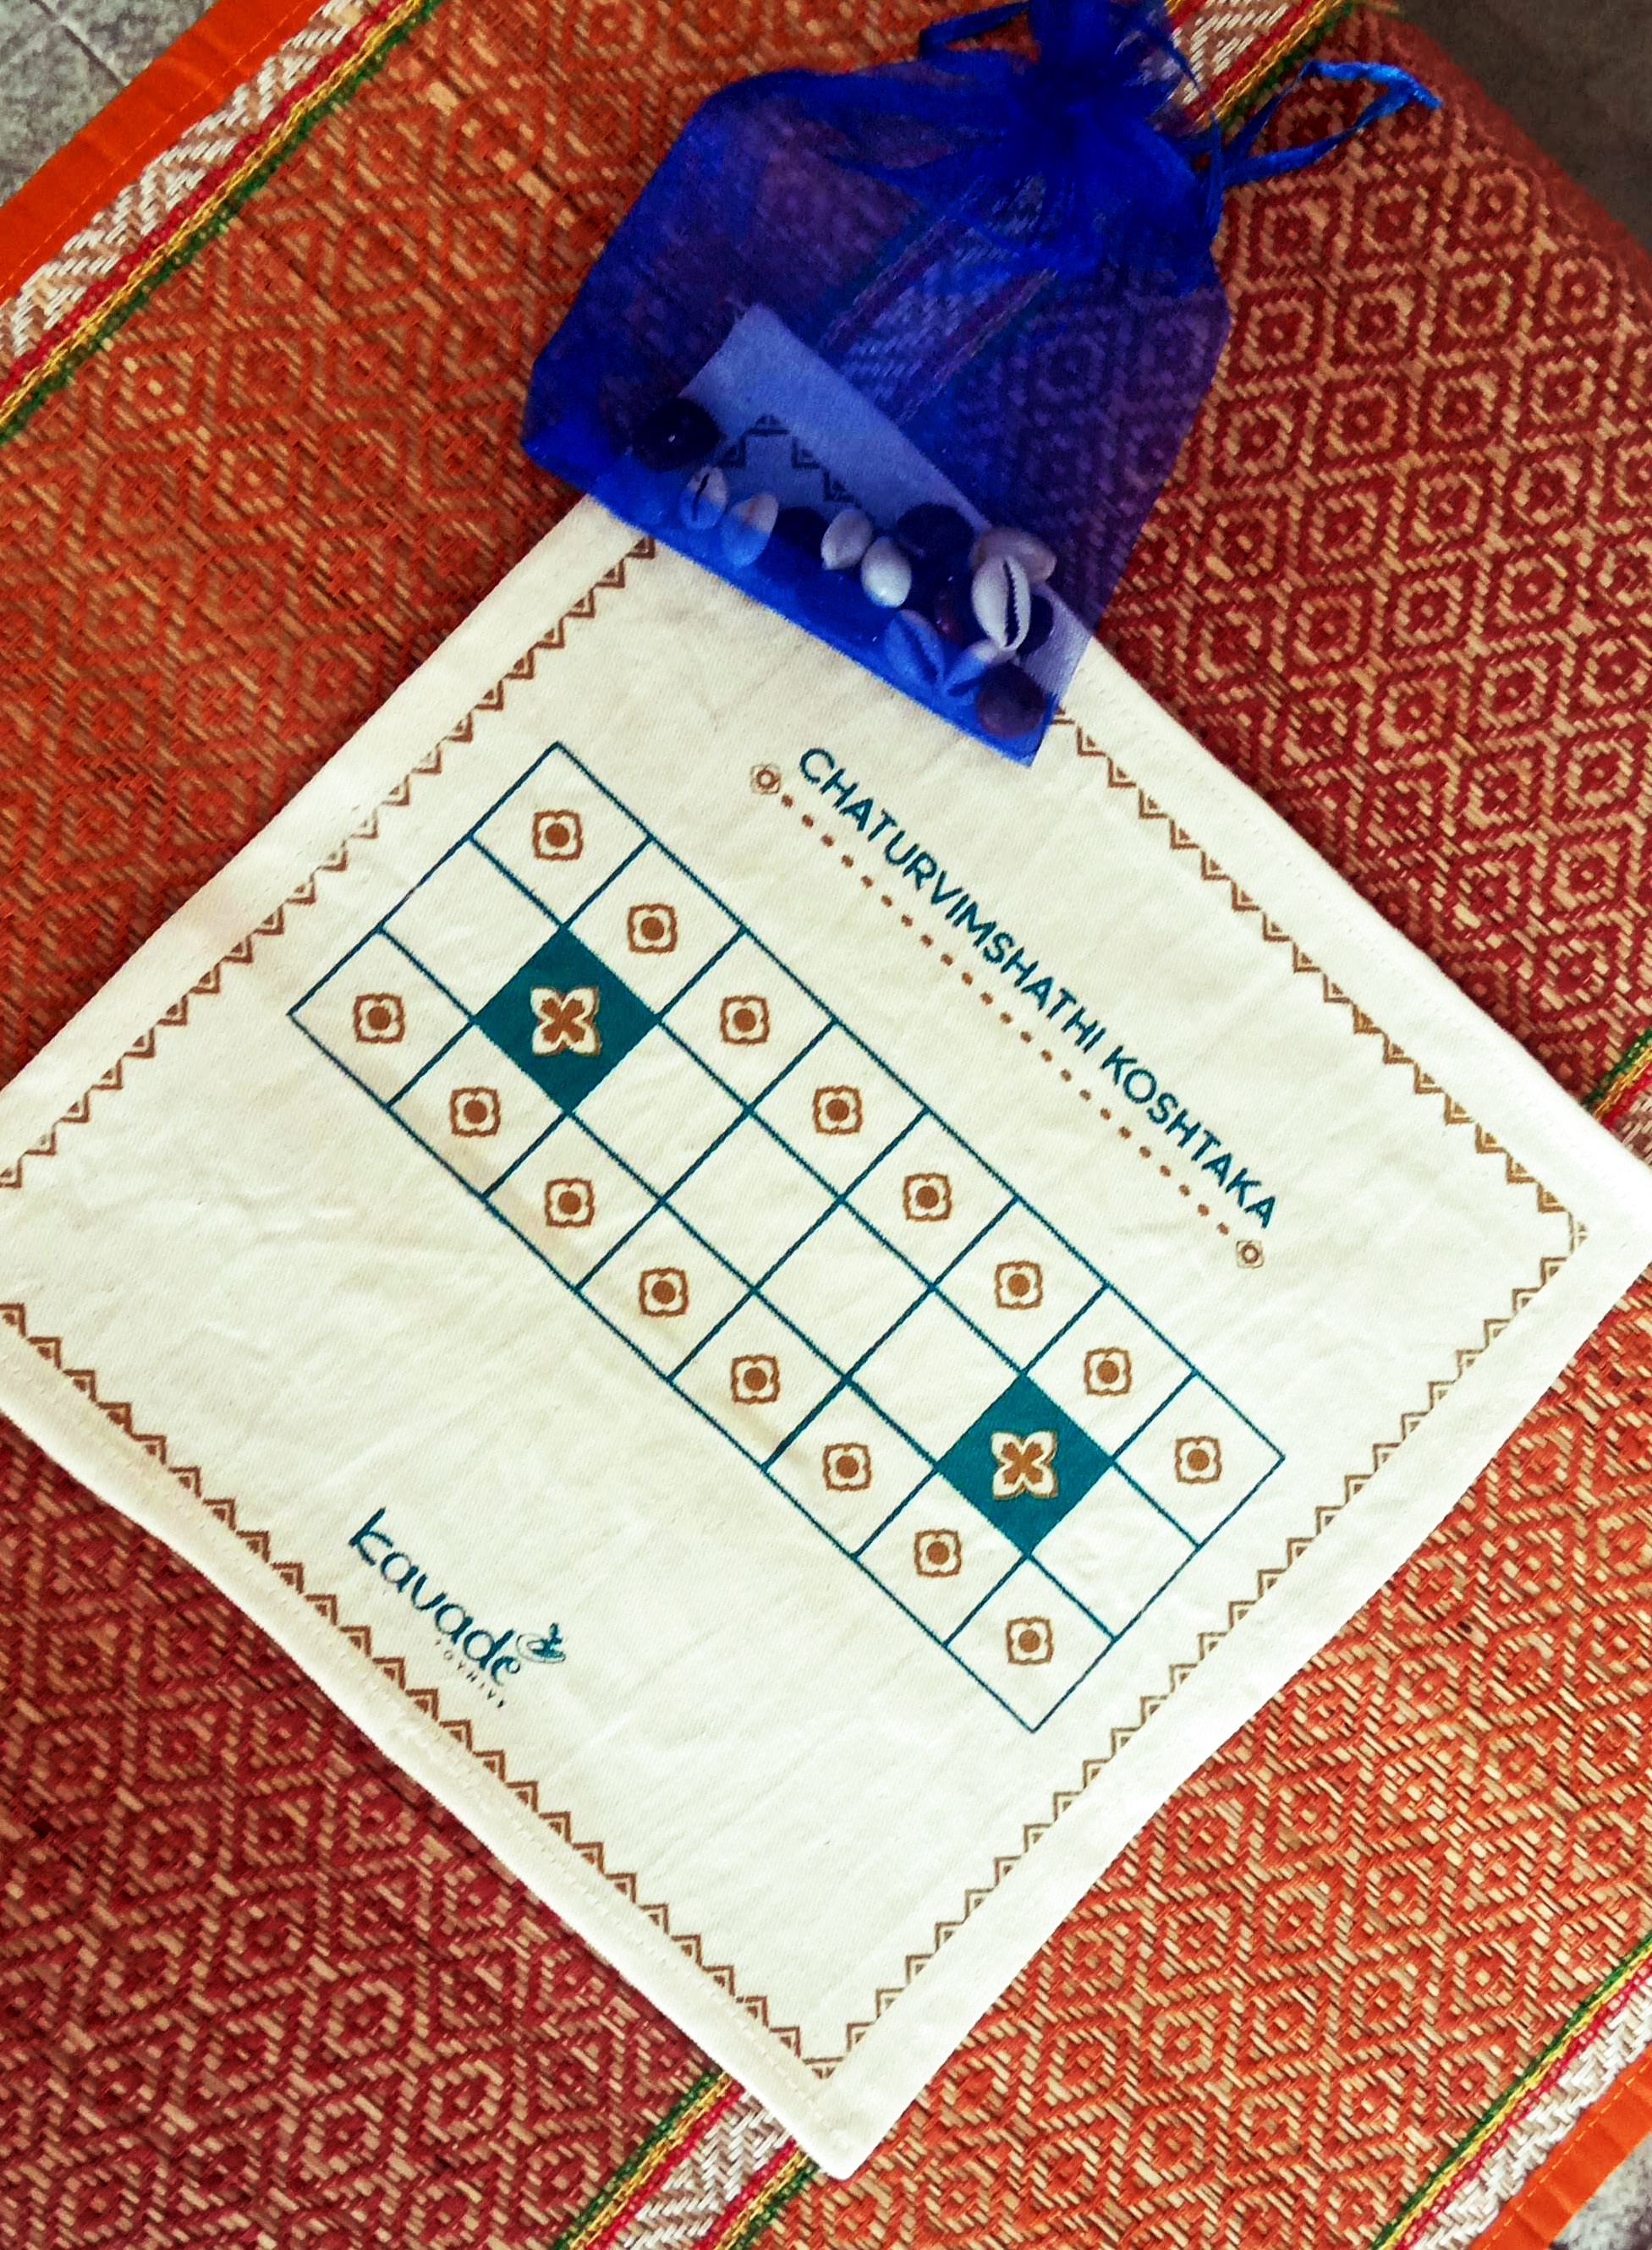 Chaturvimshathi Koshtaka: Game of 24 squares